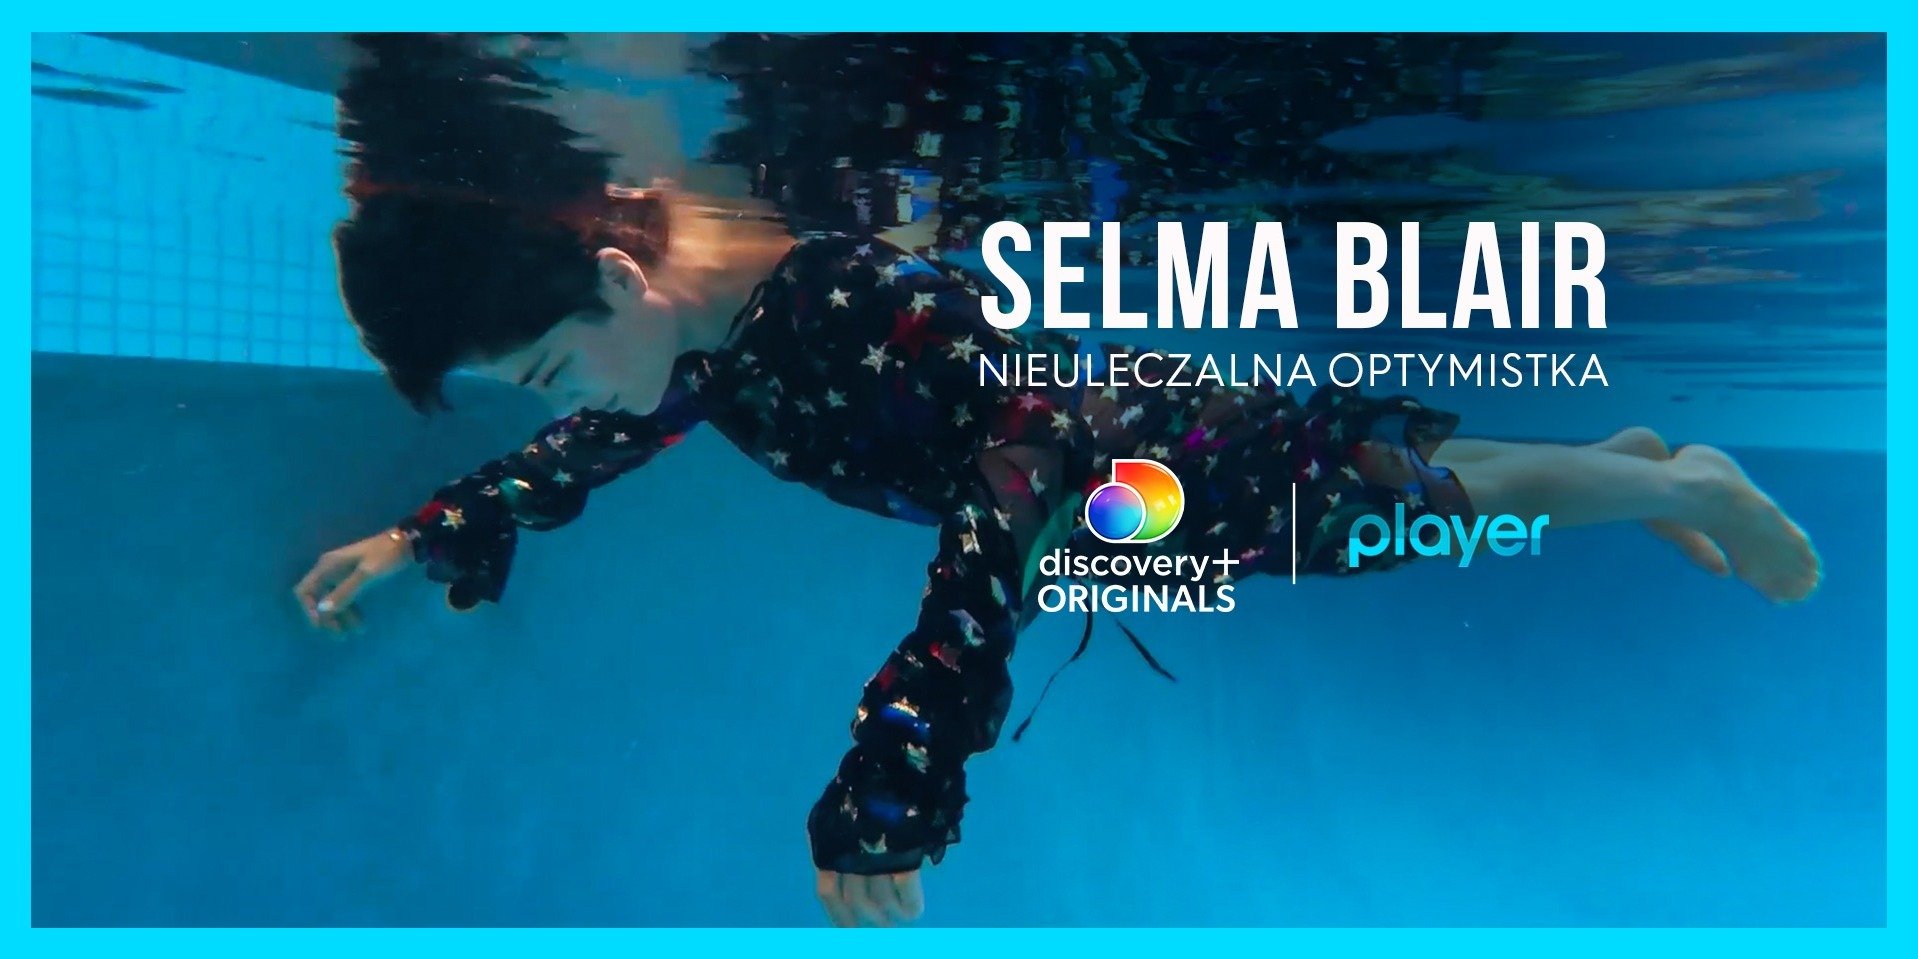 „Selma Blair – Nieuleczalna optymistka” - dokument o chorej na stwardnienie rozsiane Hollywoodzkiej aktorce już dostępny online w Player!